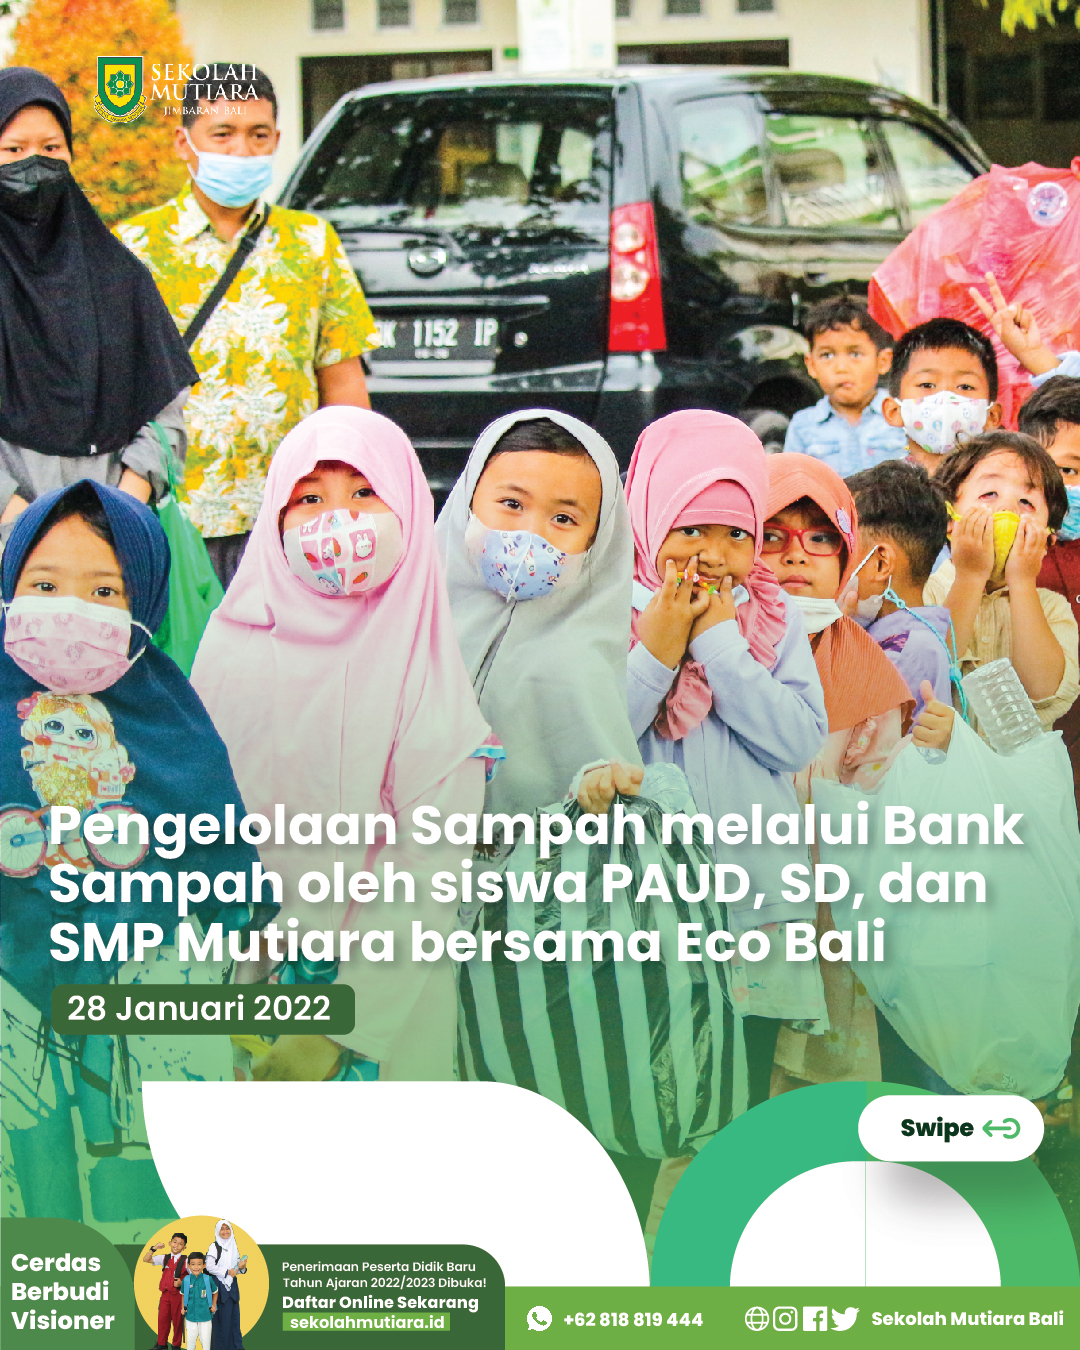 Mengajarkan Mengelola Sampah yang Baik Sejak Dini Kepada Ananda Melalui Bank Sampah Bersama Eco Bali